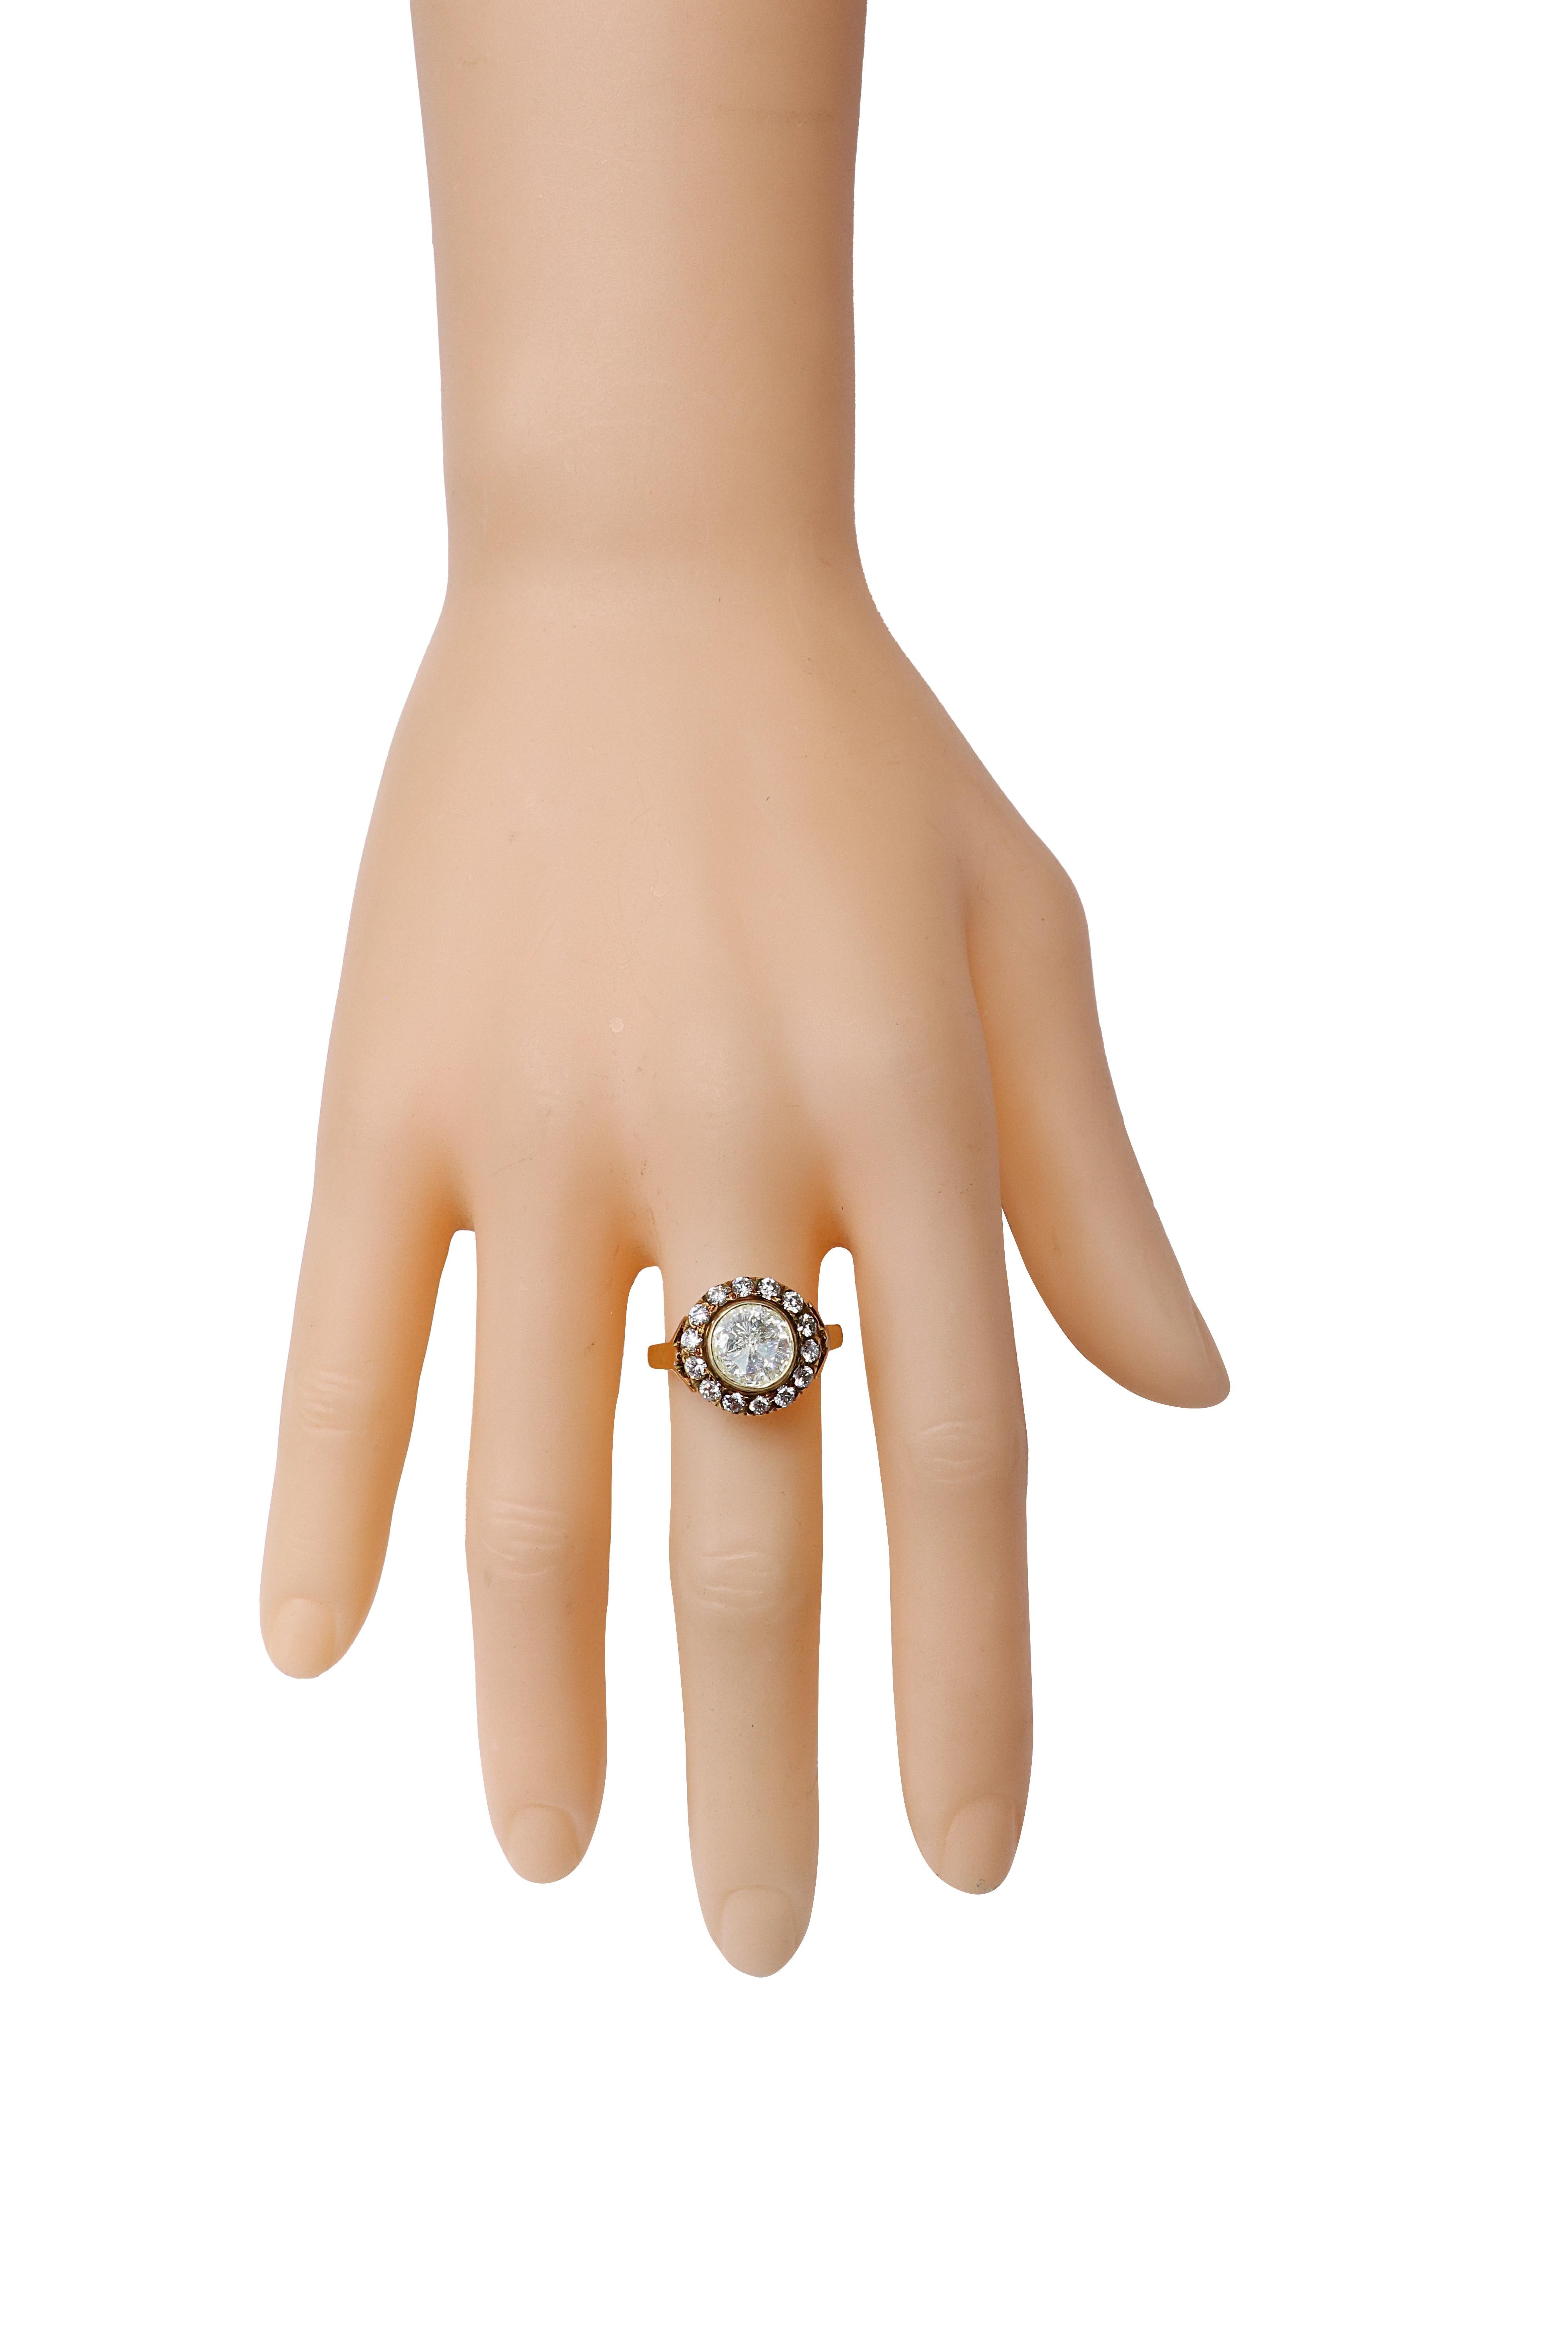 18 Karat Gold 1,22 Karat Diamant Ring im Art-Deco Stil

Halten Sie es einfach, halten Sie es klassisch. Zeigen Sie Ihren Stil mit diesem zeitlosen und klassischen Diamantring im Rundschliff. Dieser opulente Ring ist in einem dezenten und